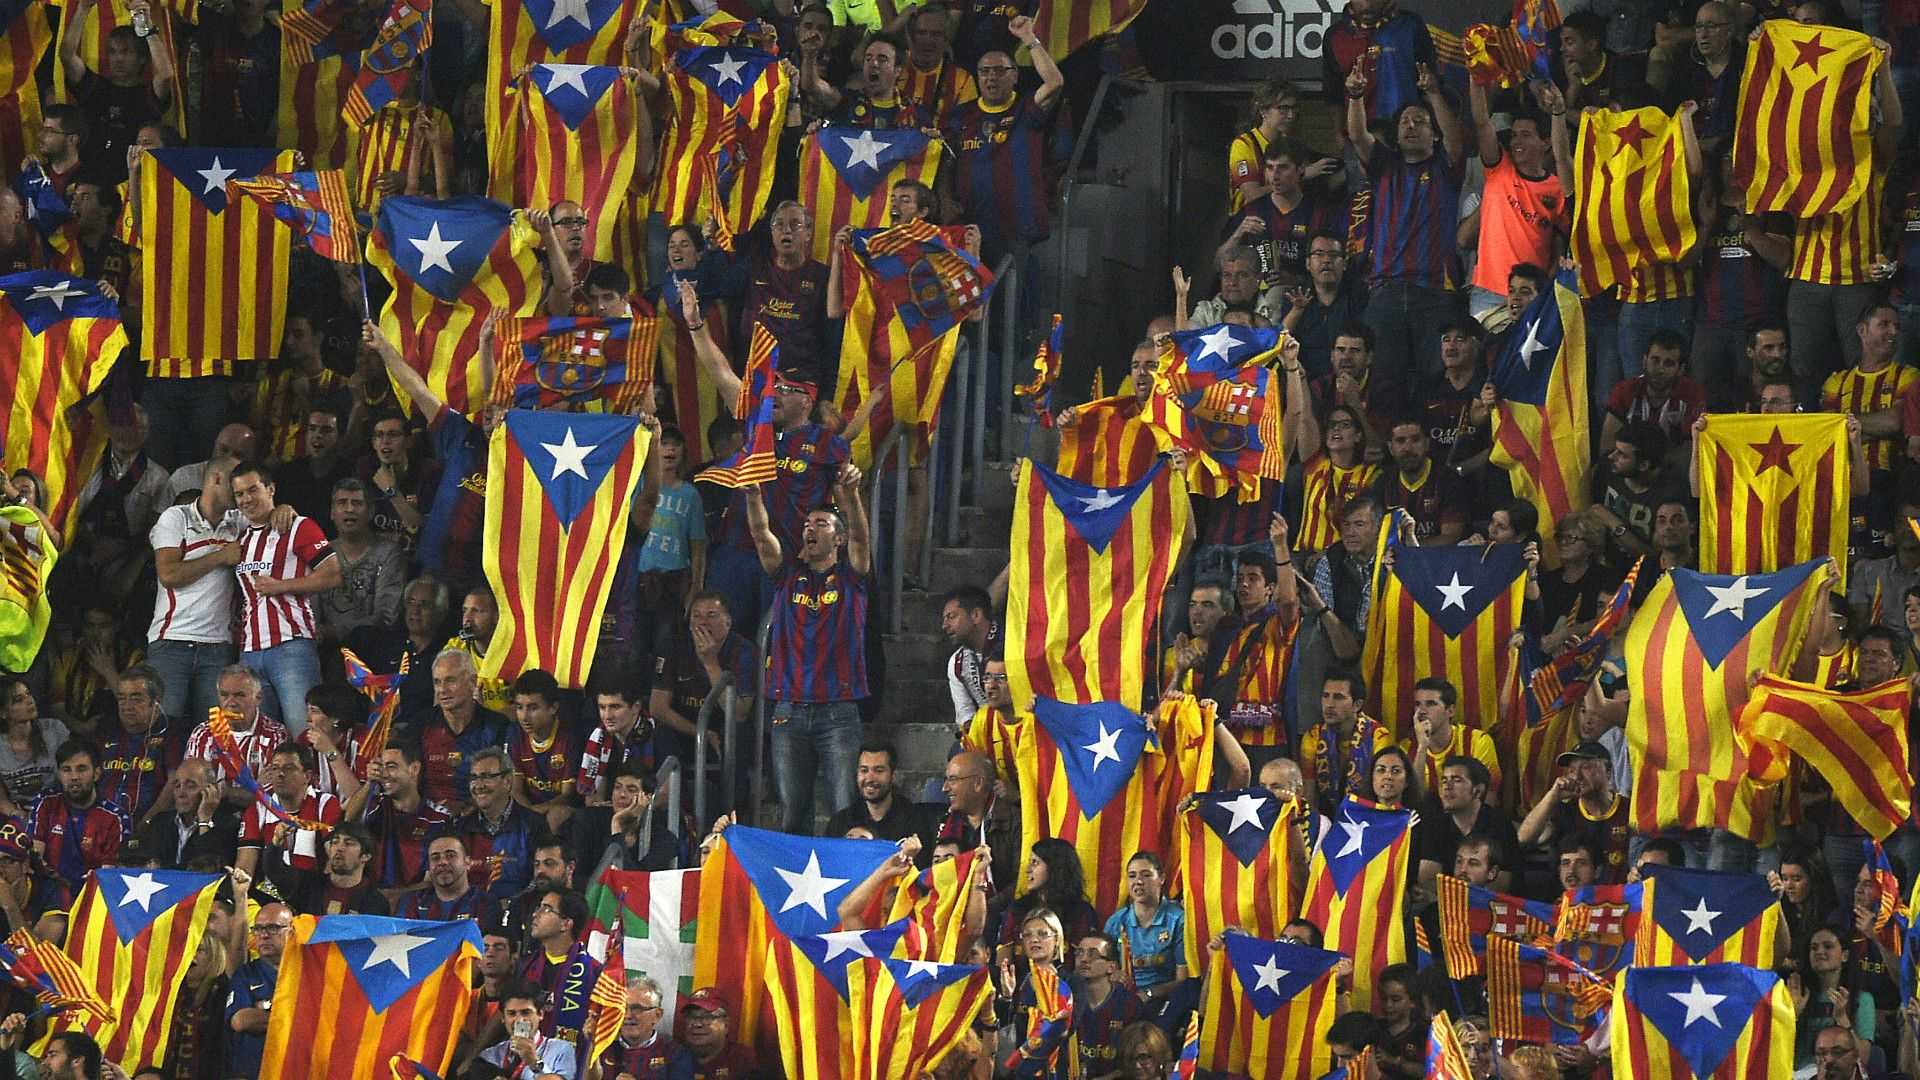 El Barça creu que la prohibició d'estelades és un "atemptat a la llibertat d'expressió"